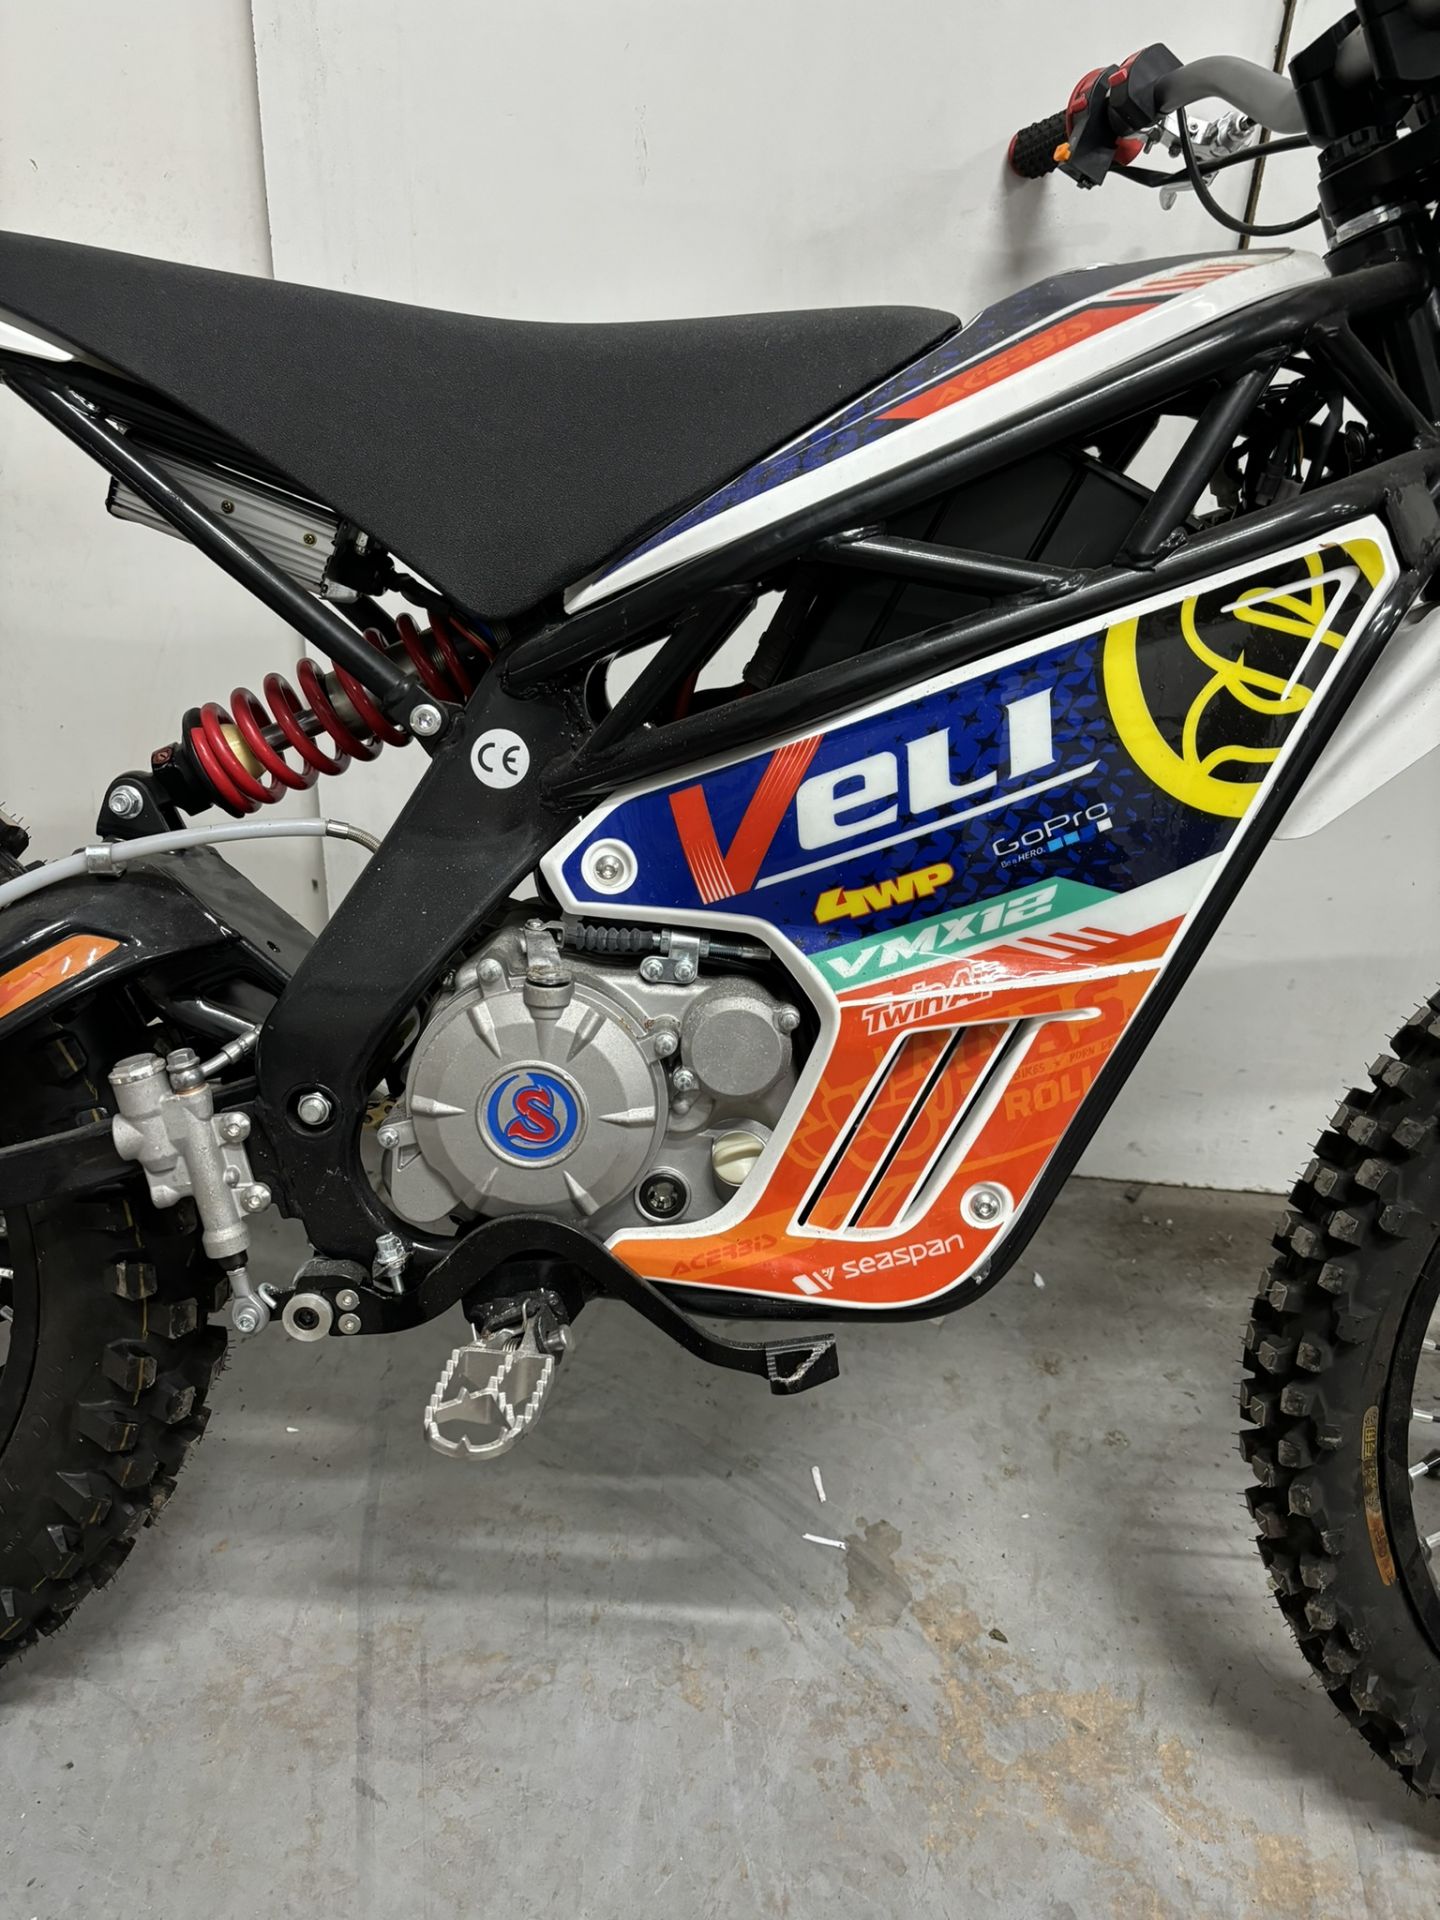 Velimotor VMX12 Electric Motorcycle / Dirt Bike - Image 14 of 24